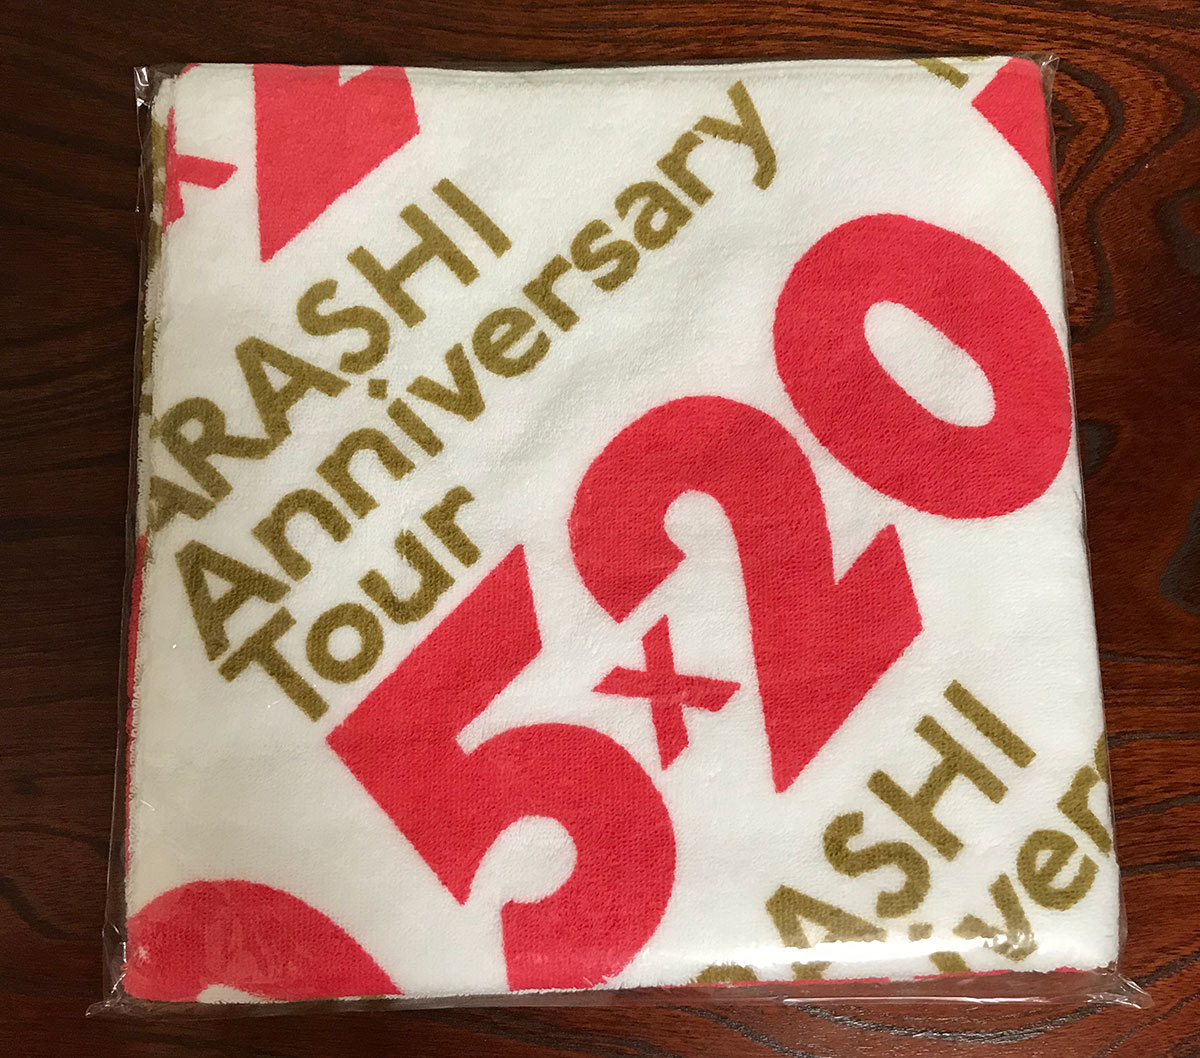 新品 嵐 Arashi Anniversary Tour 5 グッズ バスタオル Product Details Yahoo Auctions Japan Proxy Bidding And Shopping Service From Japan